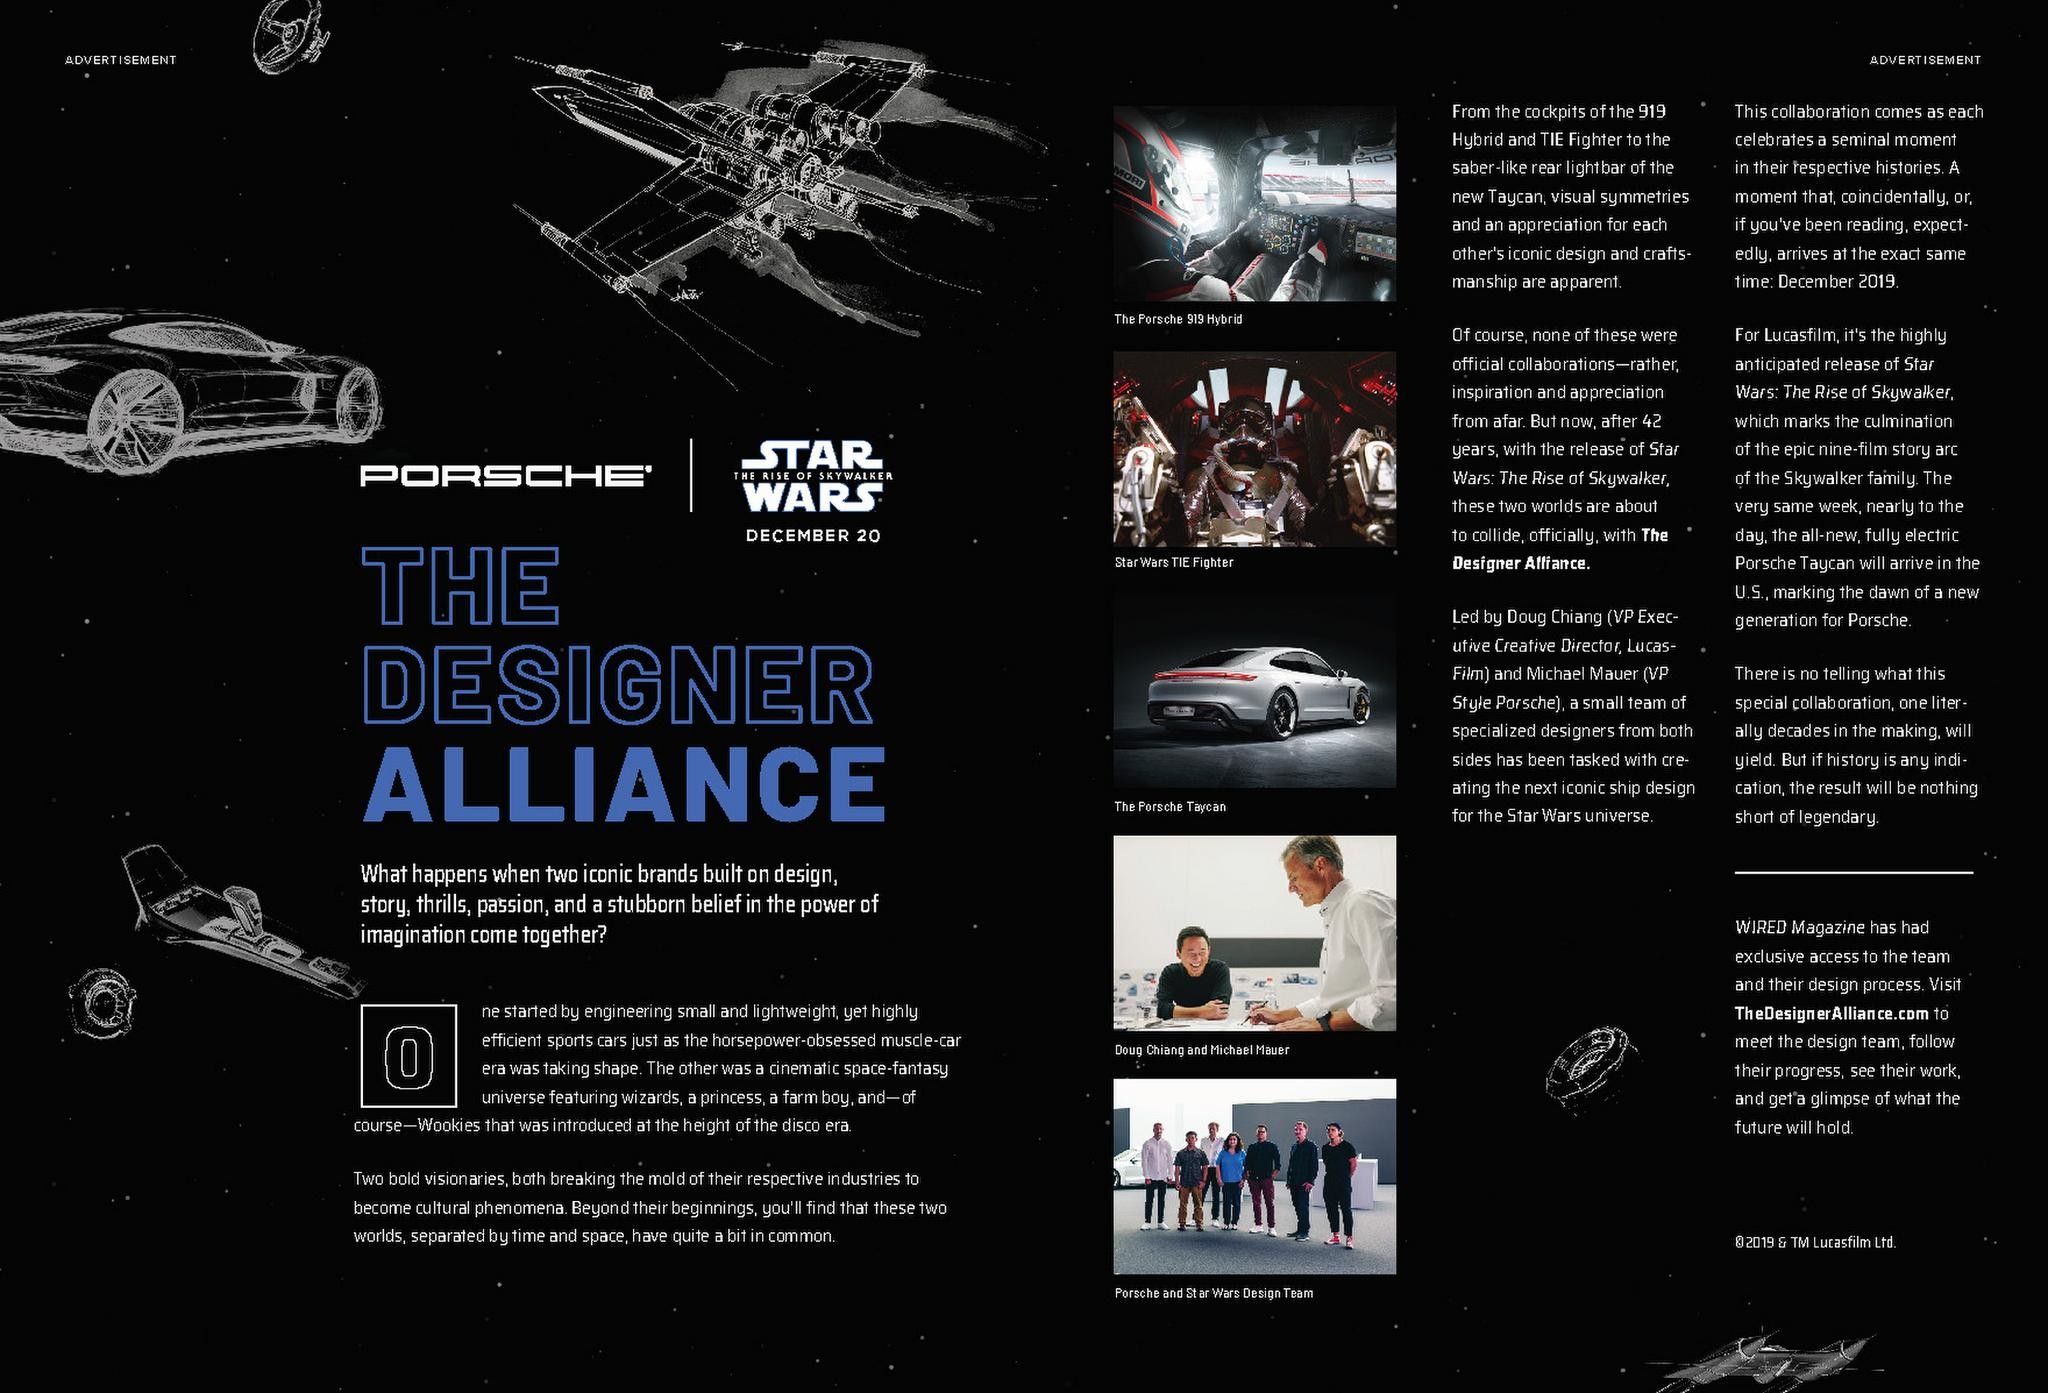 Porsche X Star Wars: The Designer Alliance